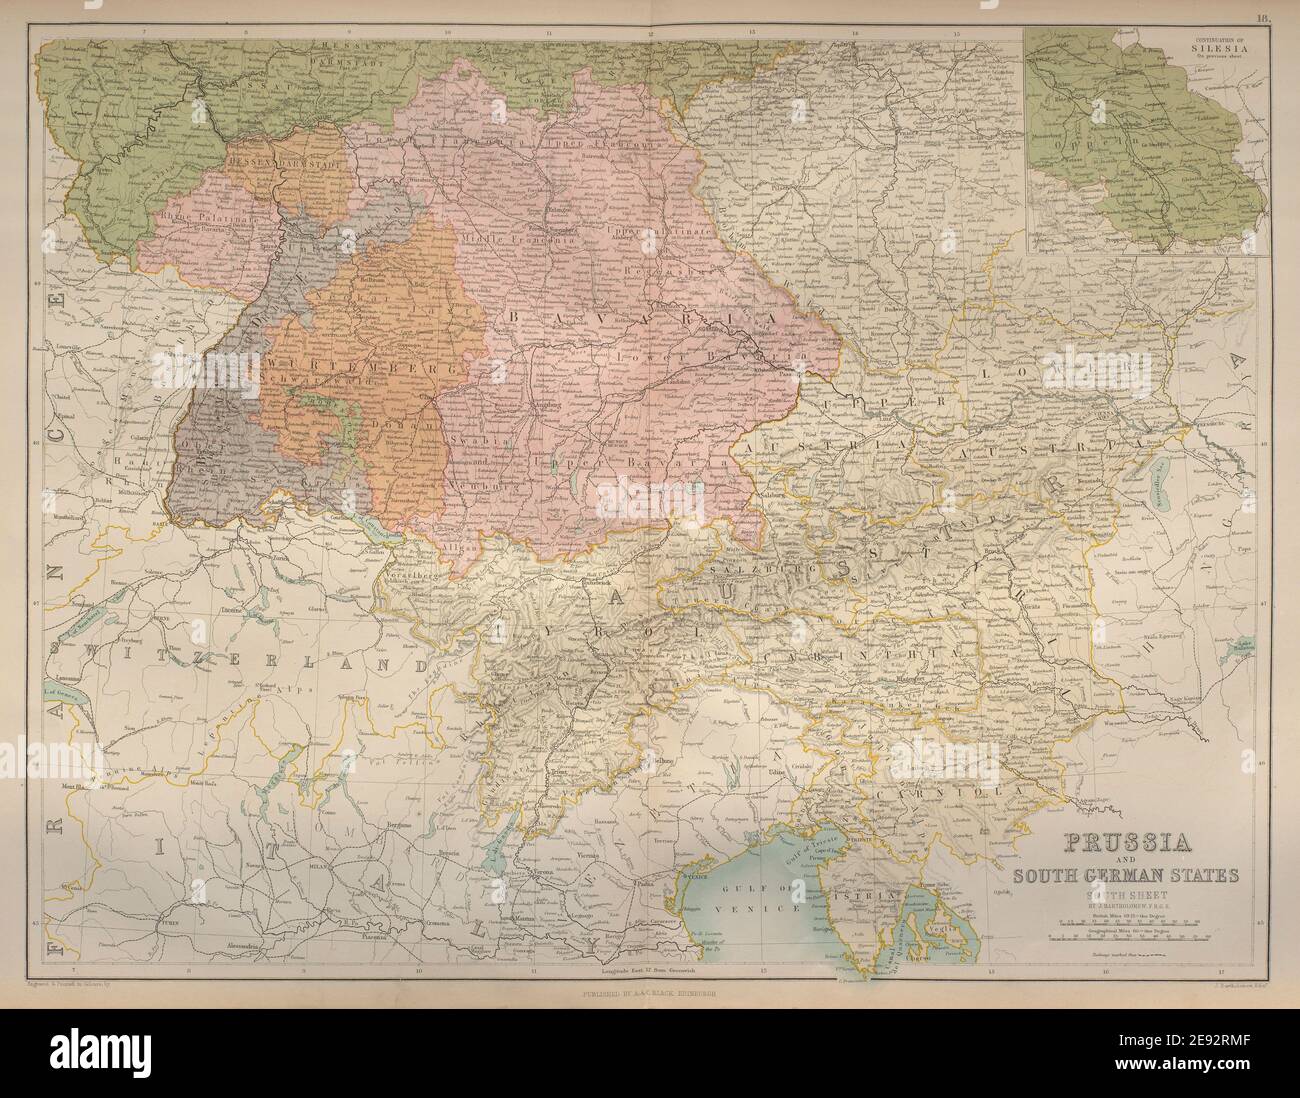 Southern Germany states & Austria. Poland Silesia Bavaria. BARTHOLOMEW 1870 map Stock Photo